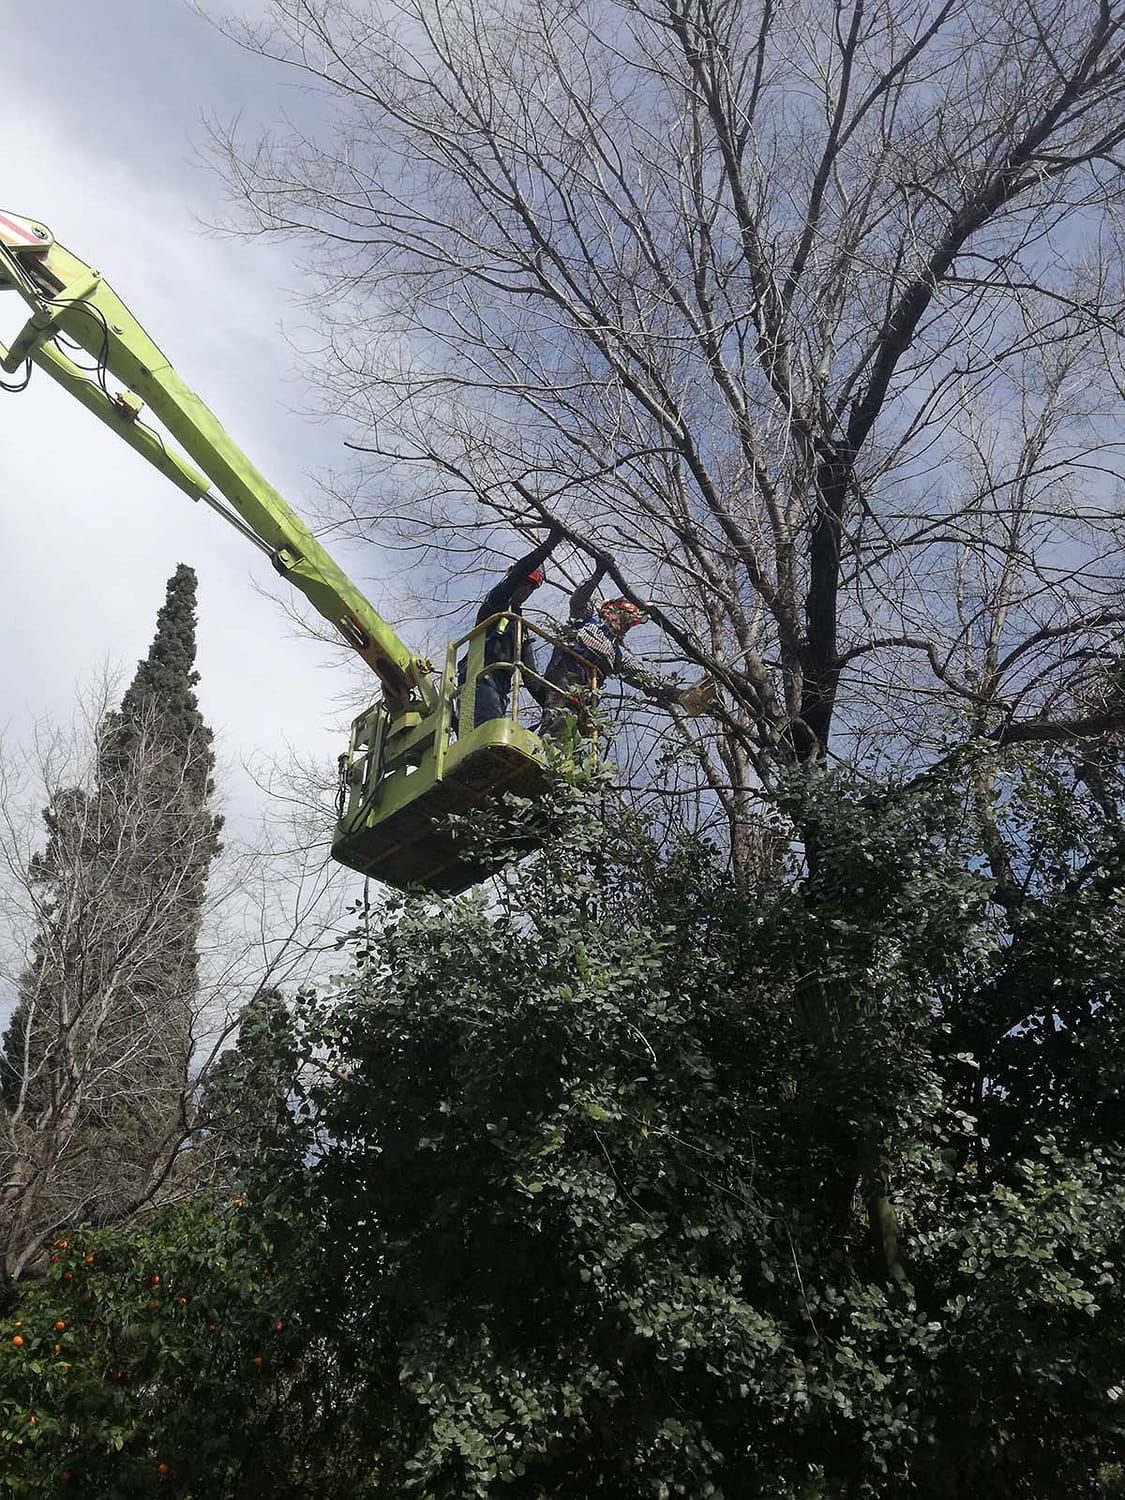 8. Εργασίες κλαδέματος υψηλών δέντρων του Ζαππείου κήπου